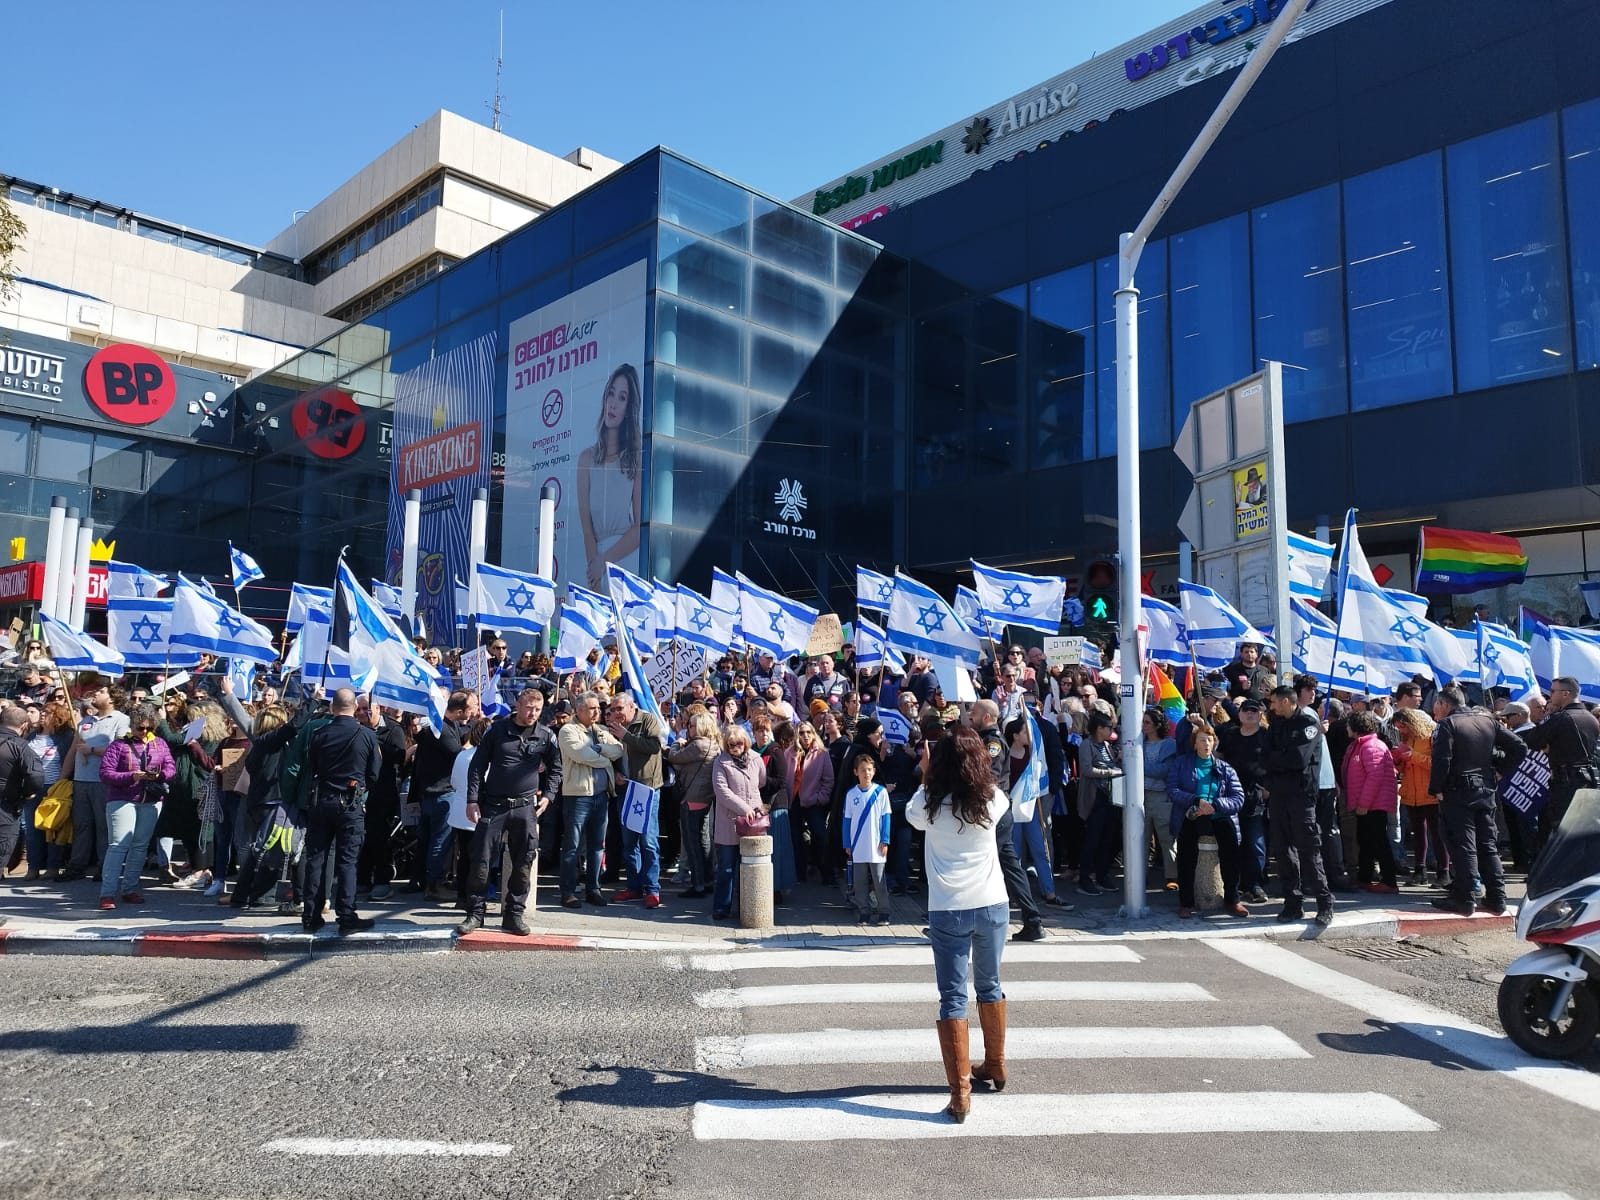 הפגנה במרכז חורב בחיפה במחאה על הרפורמה במערכת המשפט (צילום: קרן שגי)